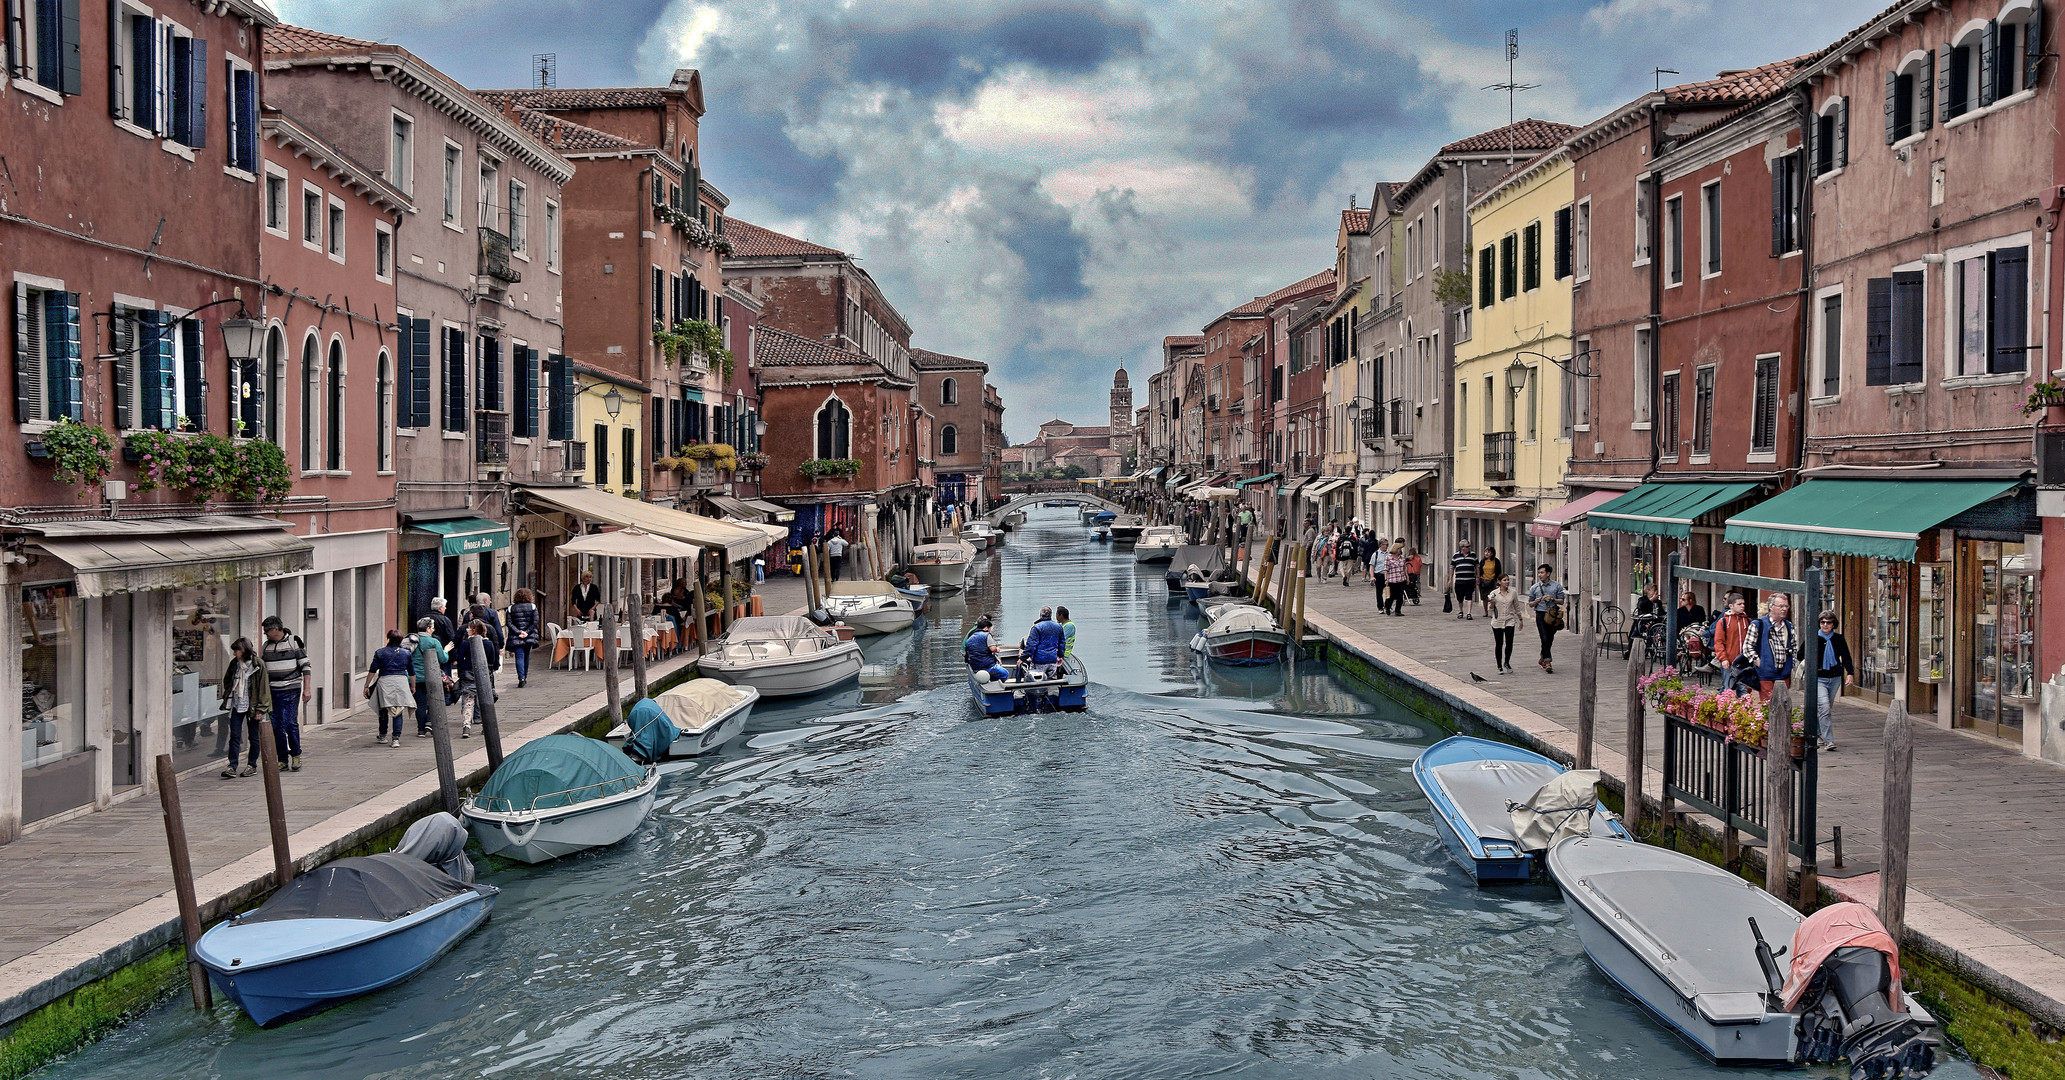 Insel Murano (Venedig)